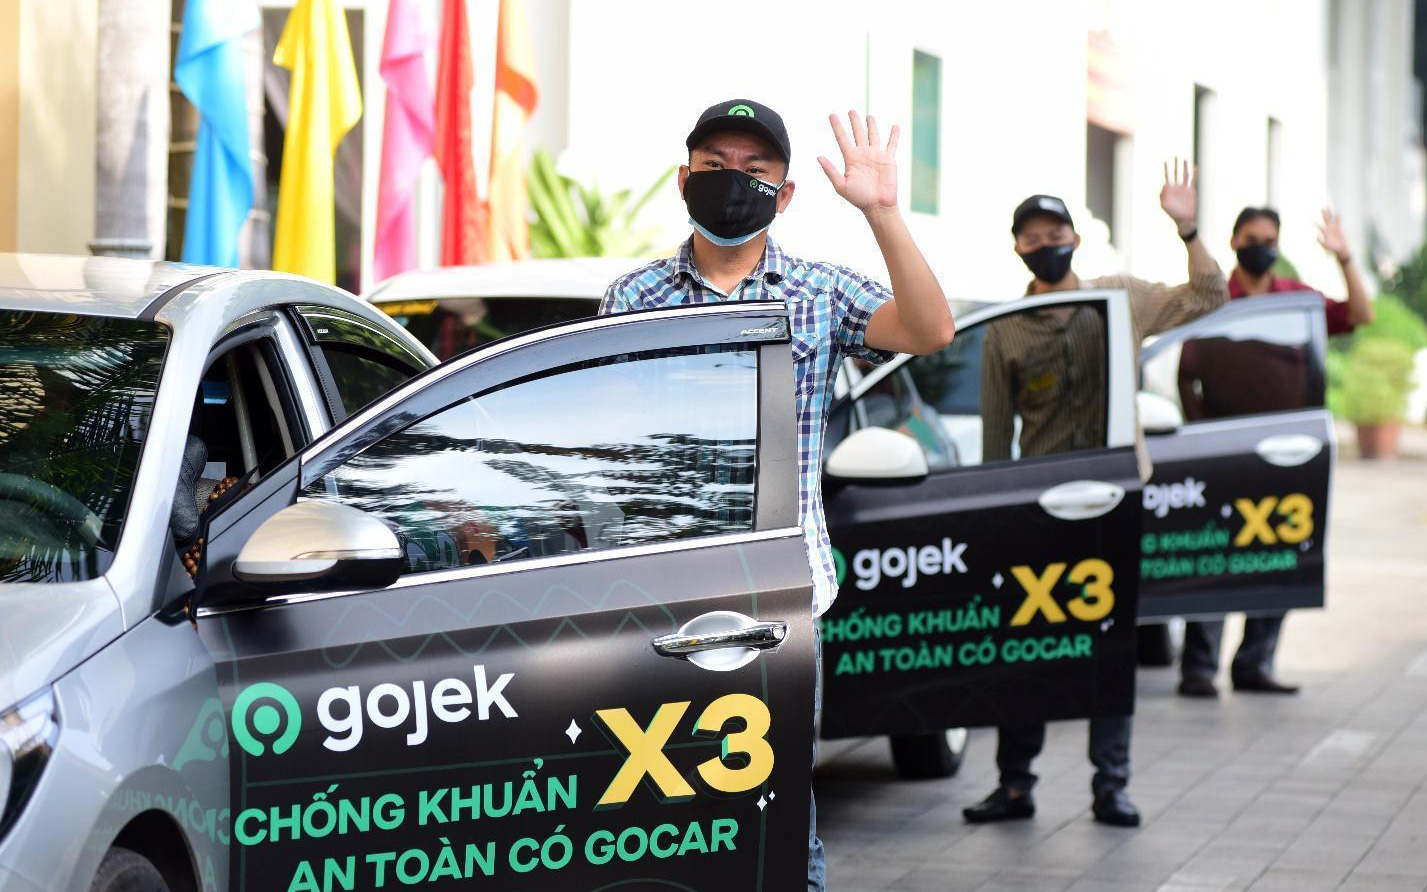 GoCar sắp ra mắt ở Hà Nội, đãi ngộ cho tài xế như thế nào?